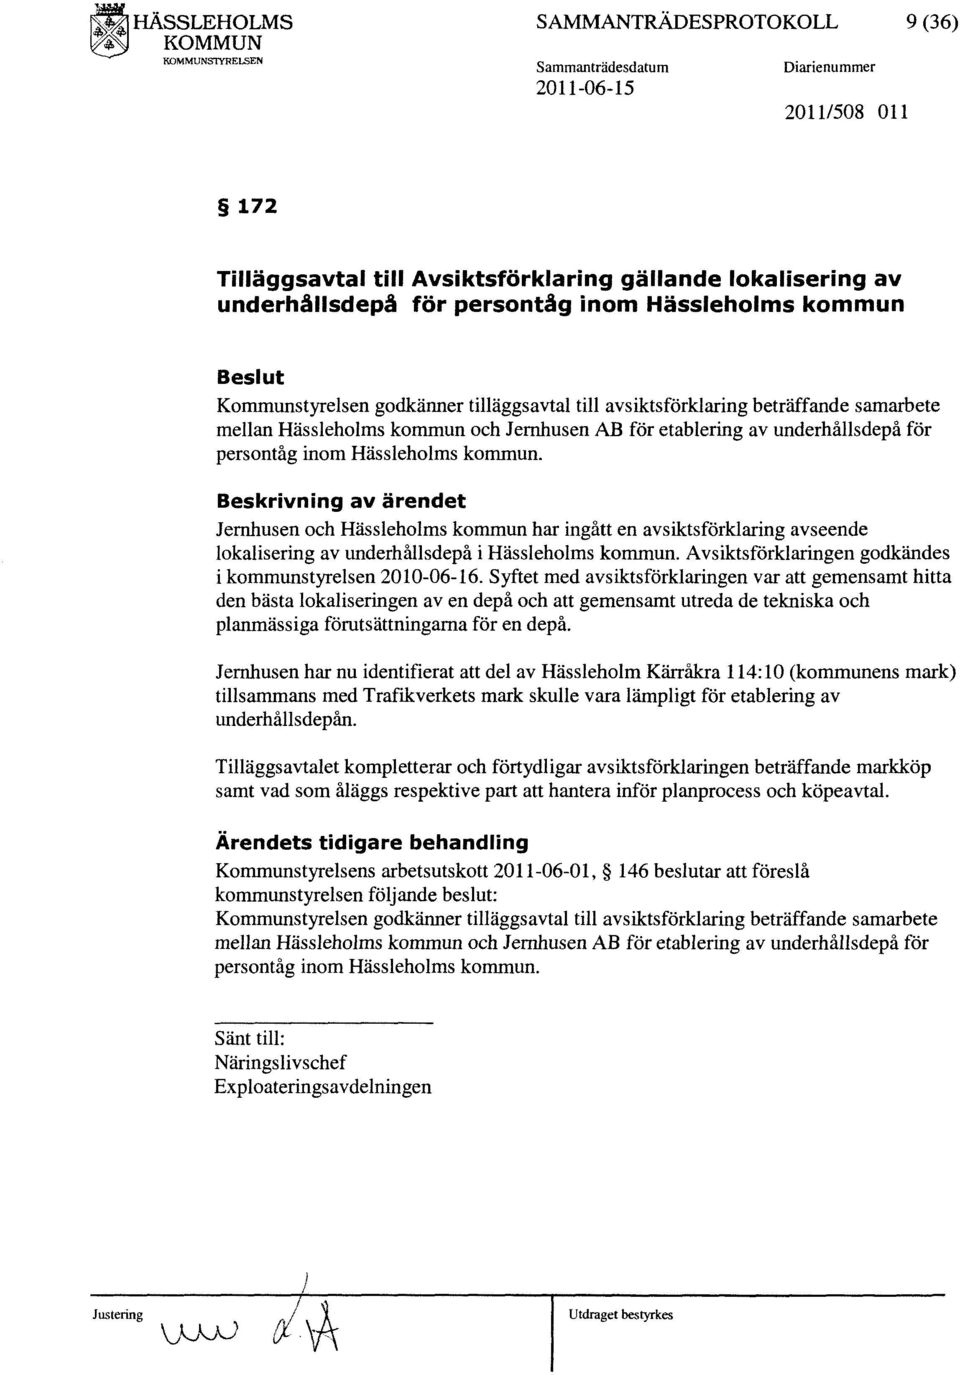 Kommunstyrelsen godkänner tilläggsavtal till avsiktsförklaring beträffande samarbete mellan Hässleholms kommun och Jernhusen AB för etablering av underhållsdepå för persontåg inom Hässleholms kommun.